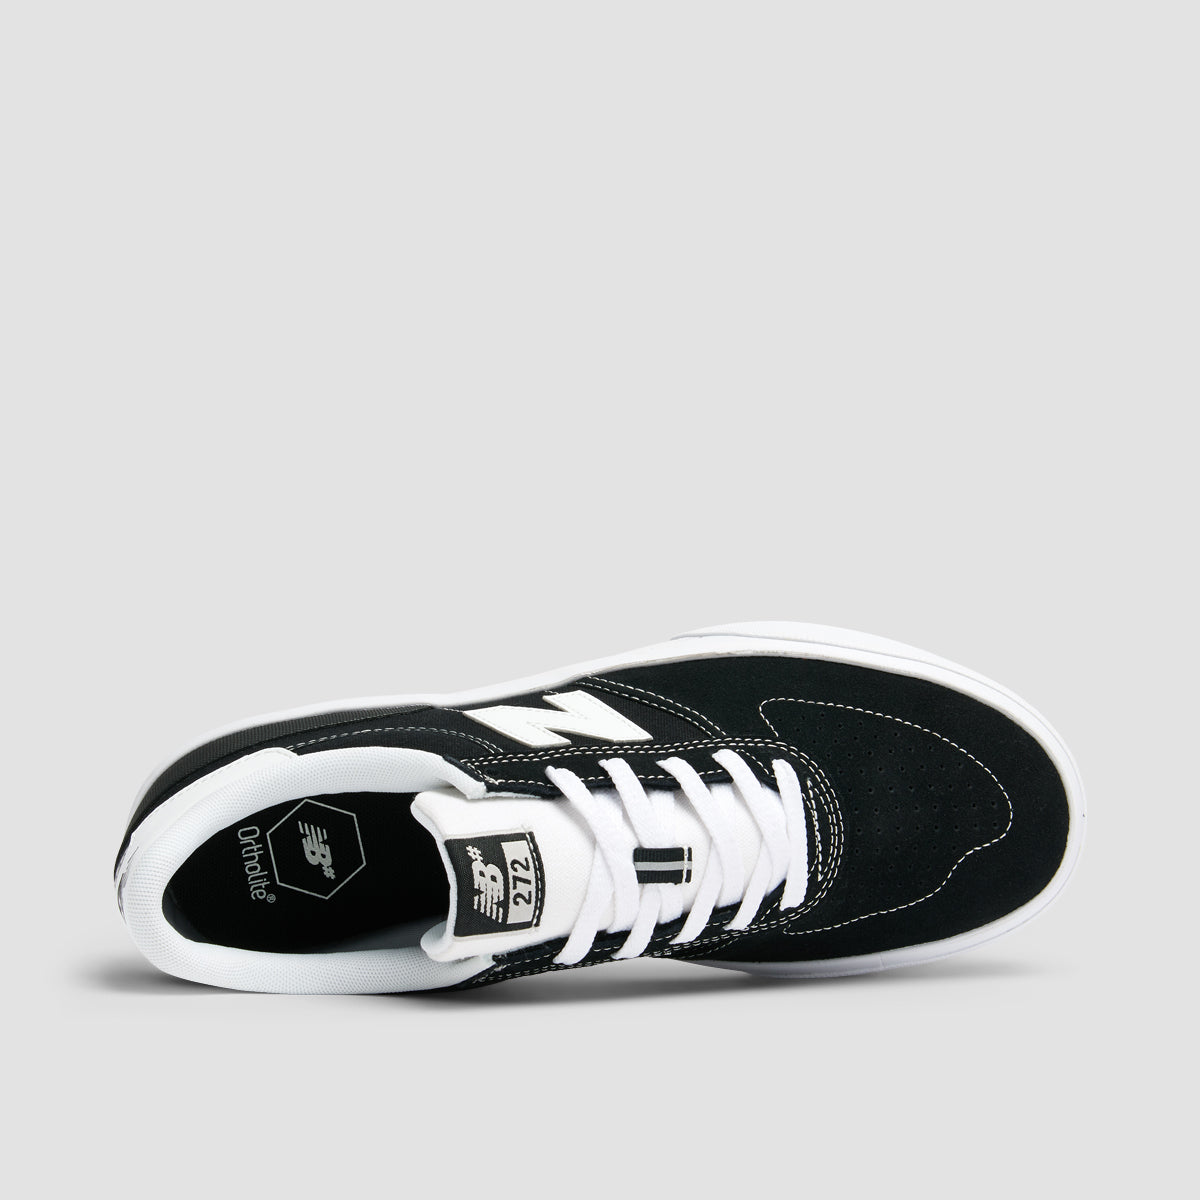 New Balance Numeric 272 Shoes - Black/White